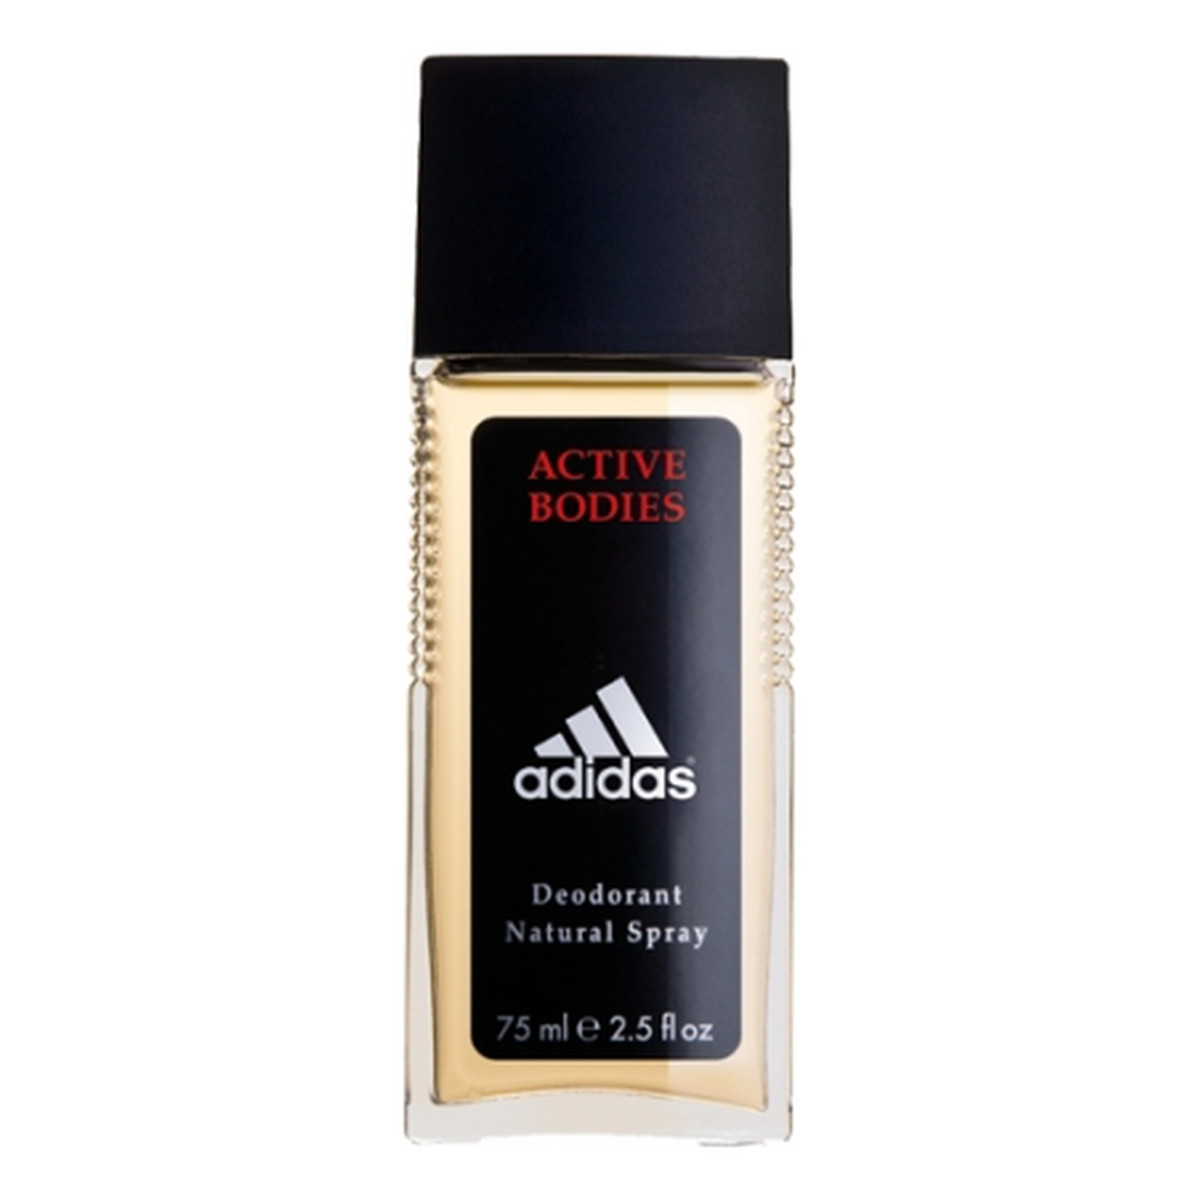 Adidas Active Bodies Dezodorant Spray 75ml